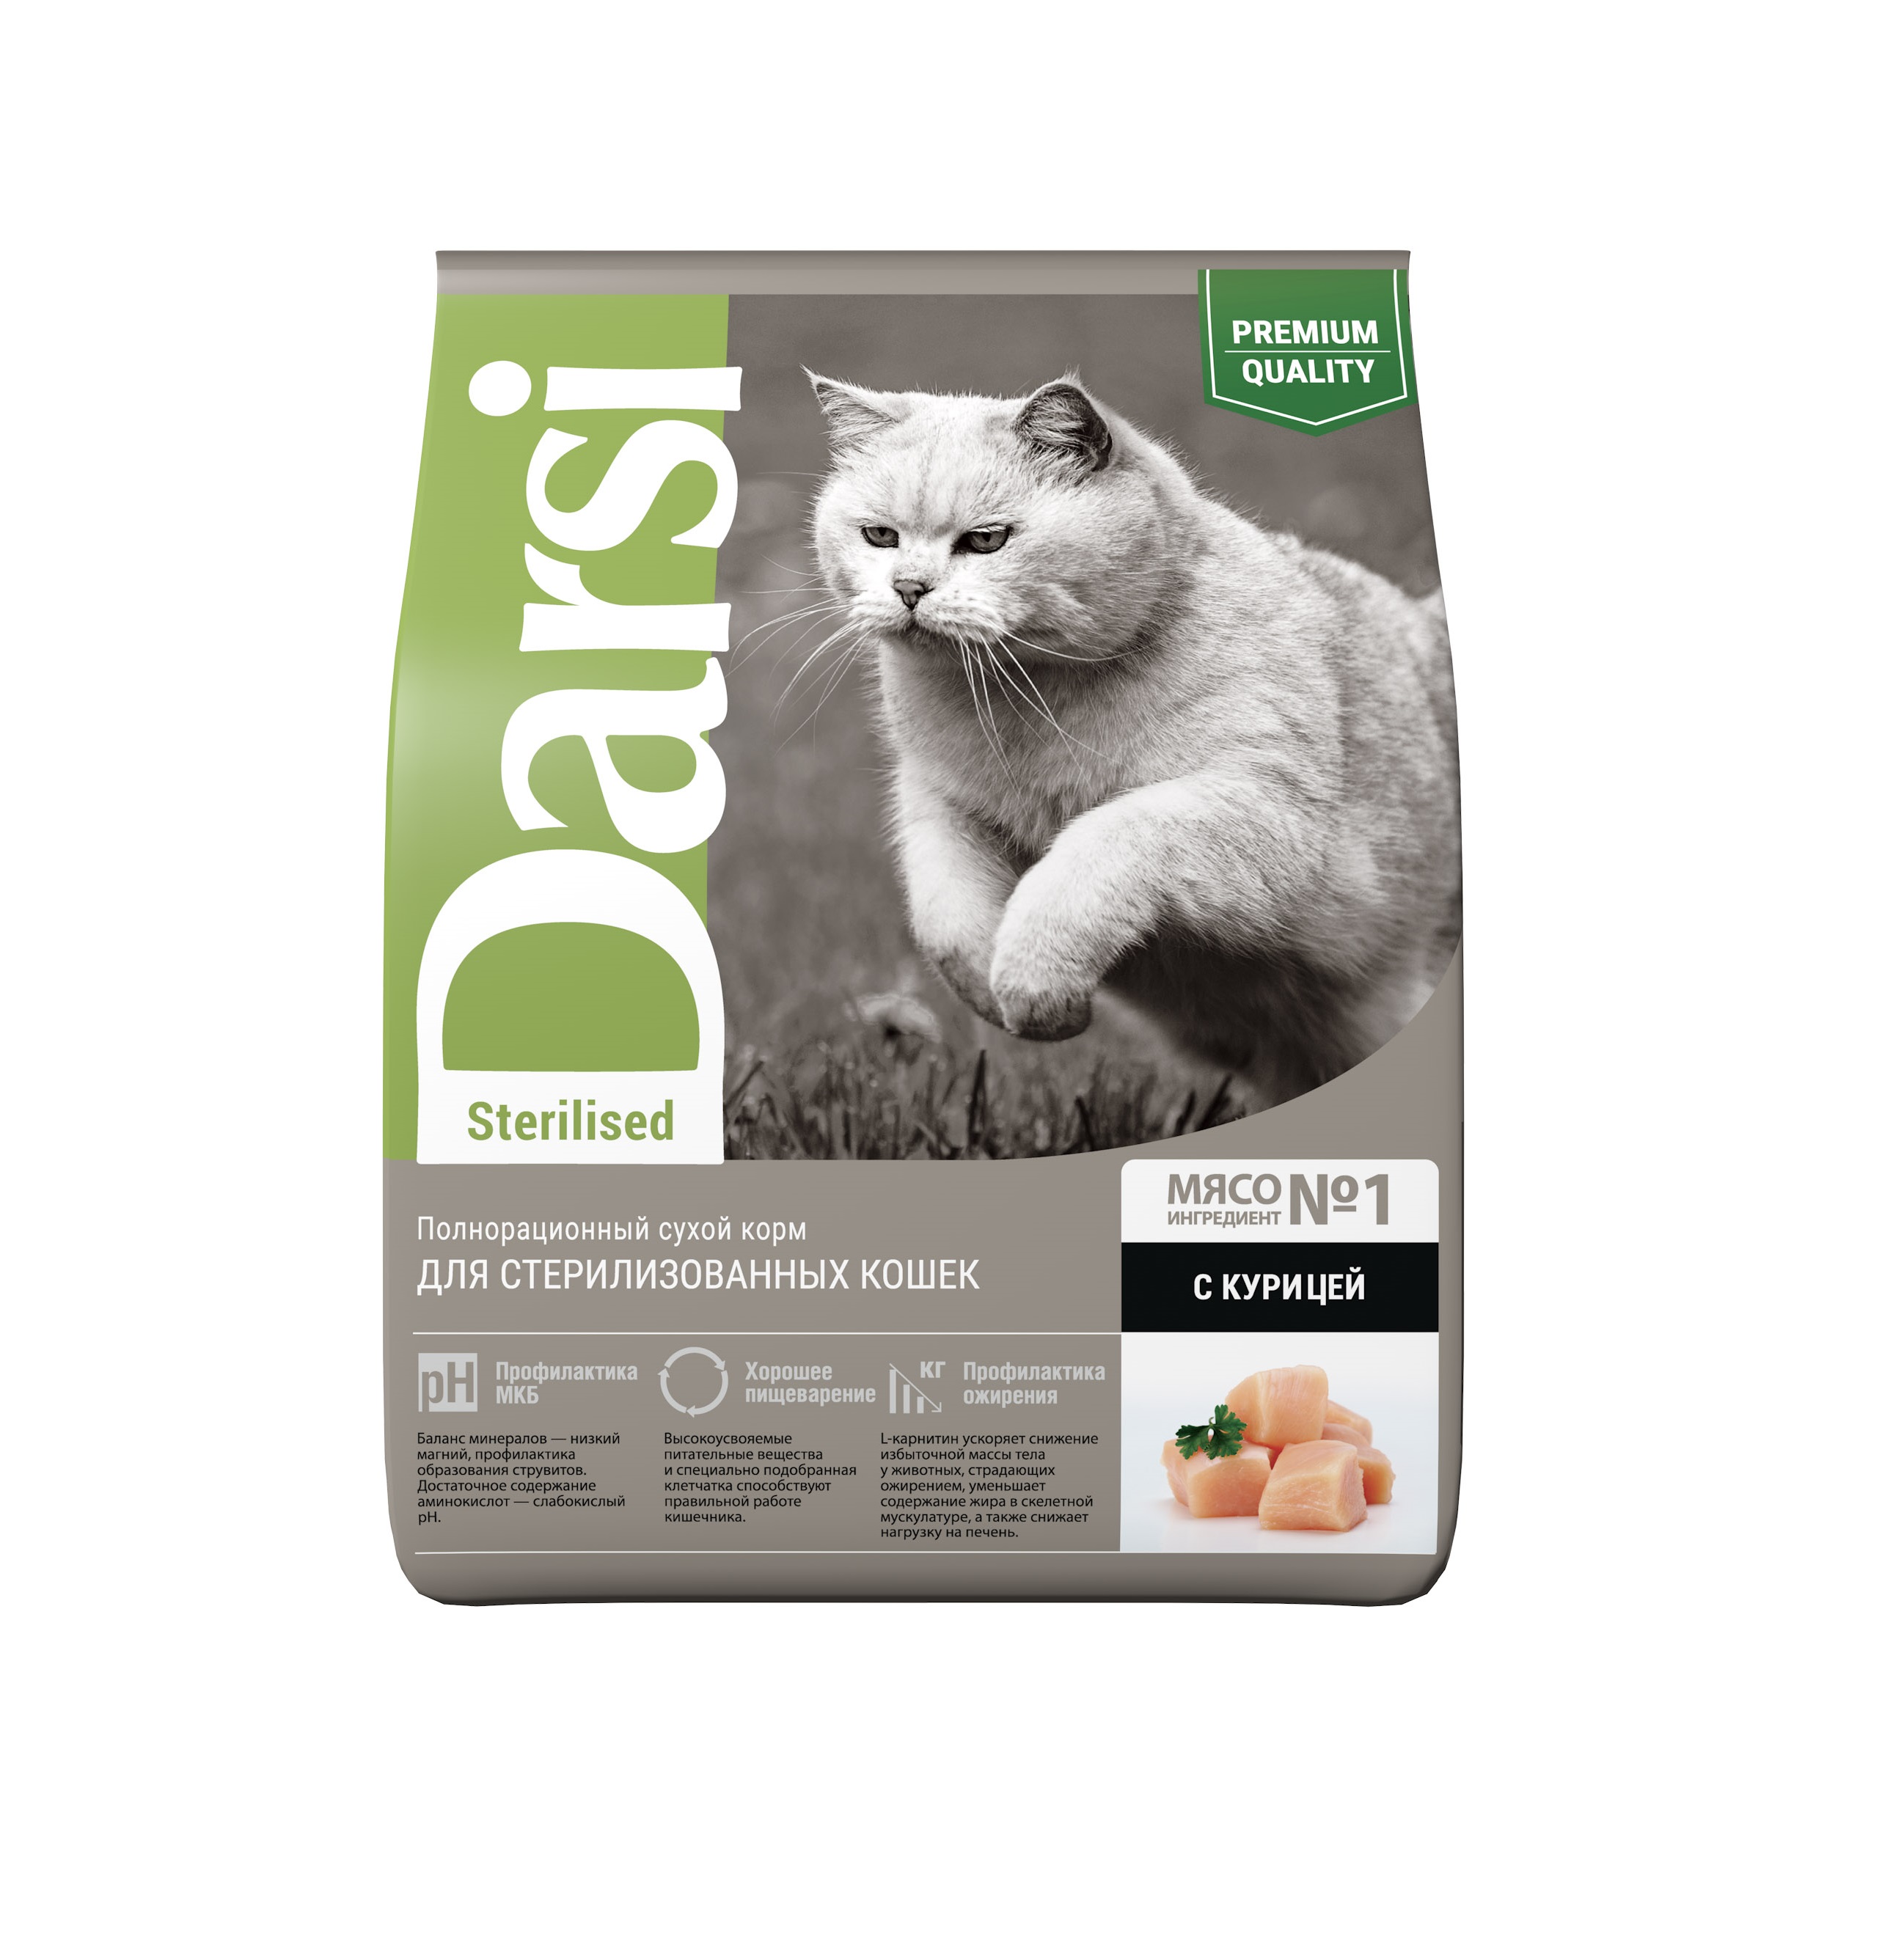 Дарси 1,8кг - Курица, для Стерилизованных кошек (Darsi)